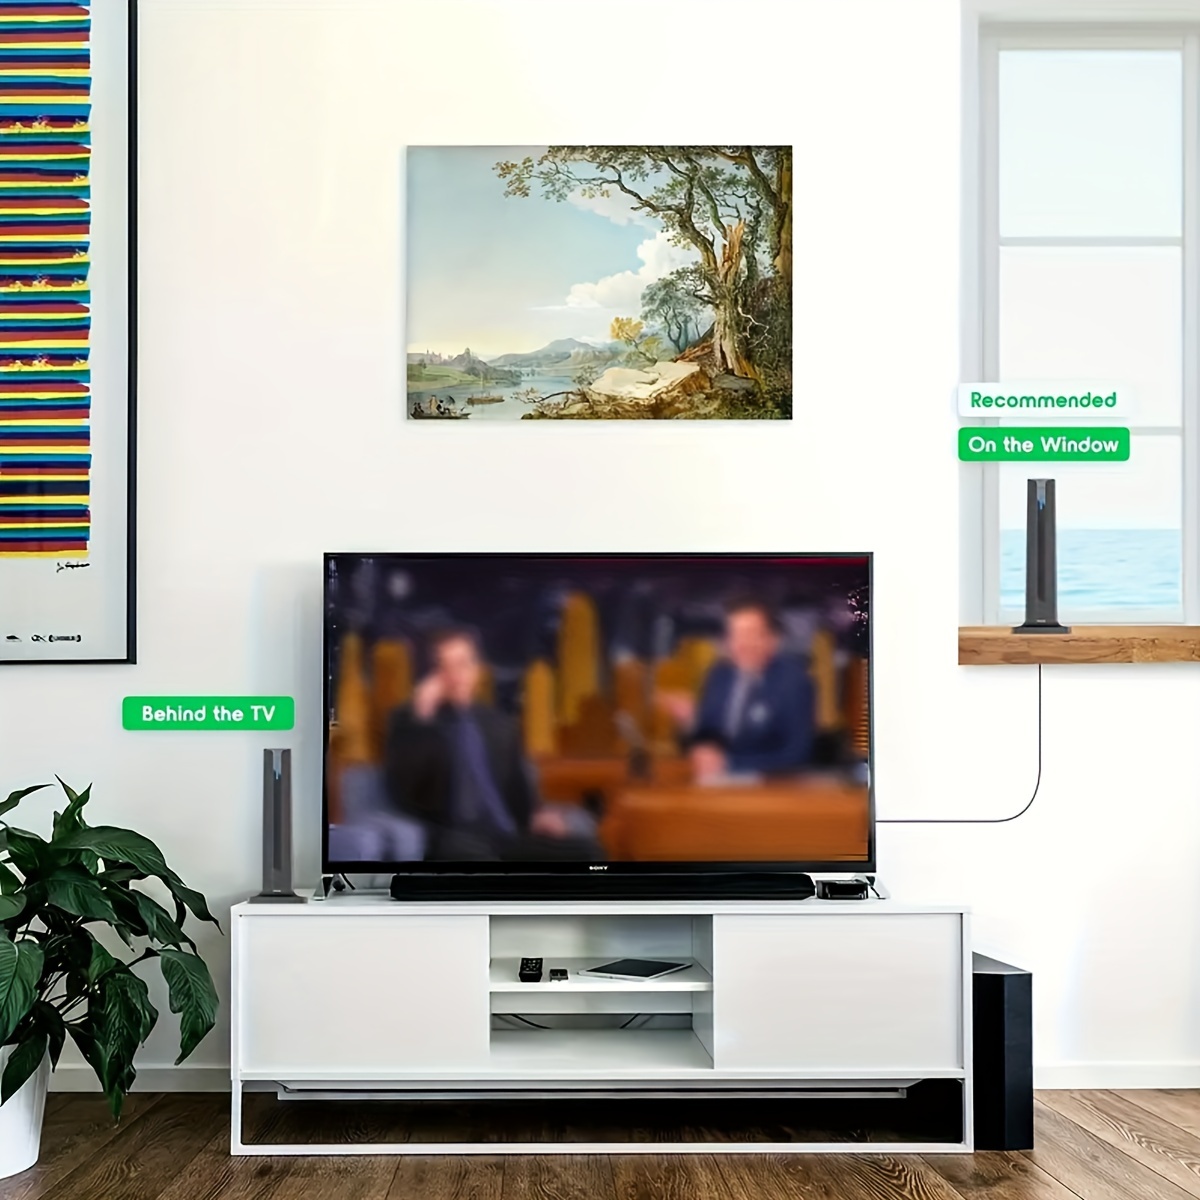 Antena Interior Con Amplificador - Antena Interior Para Tv - Antena Hdtv